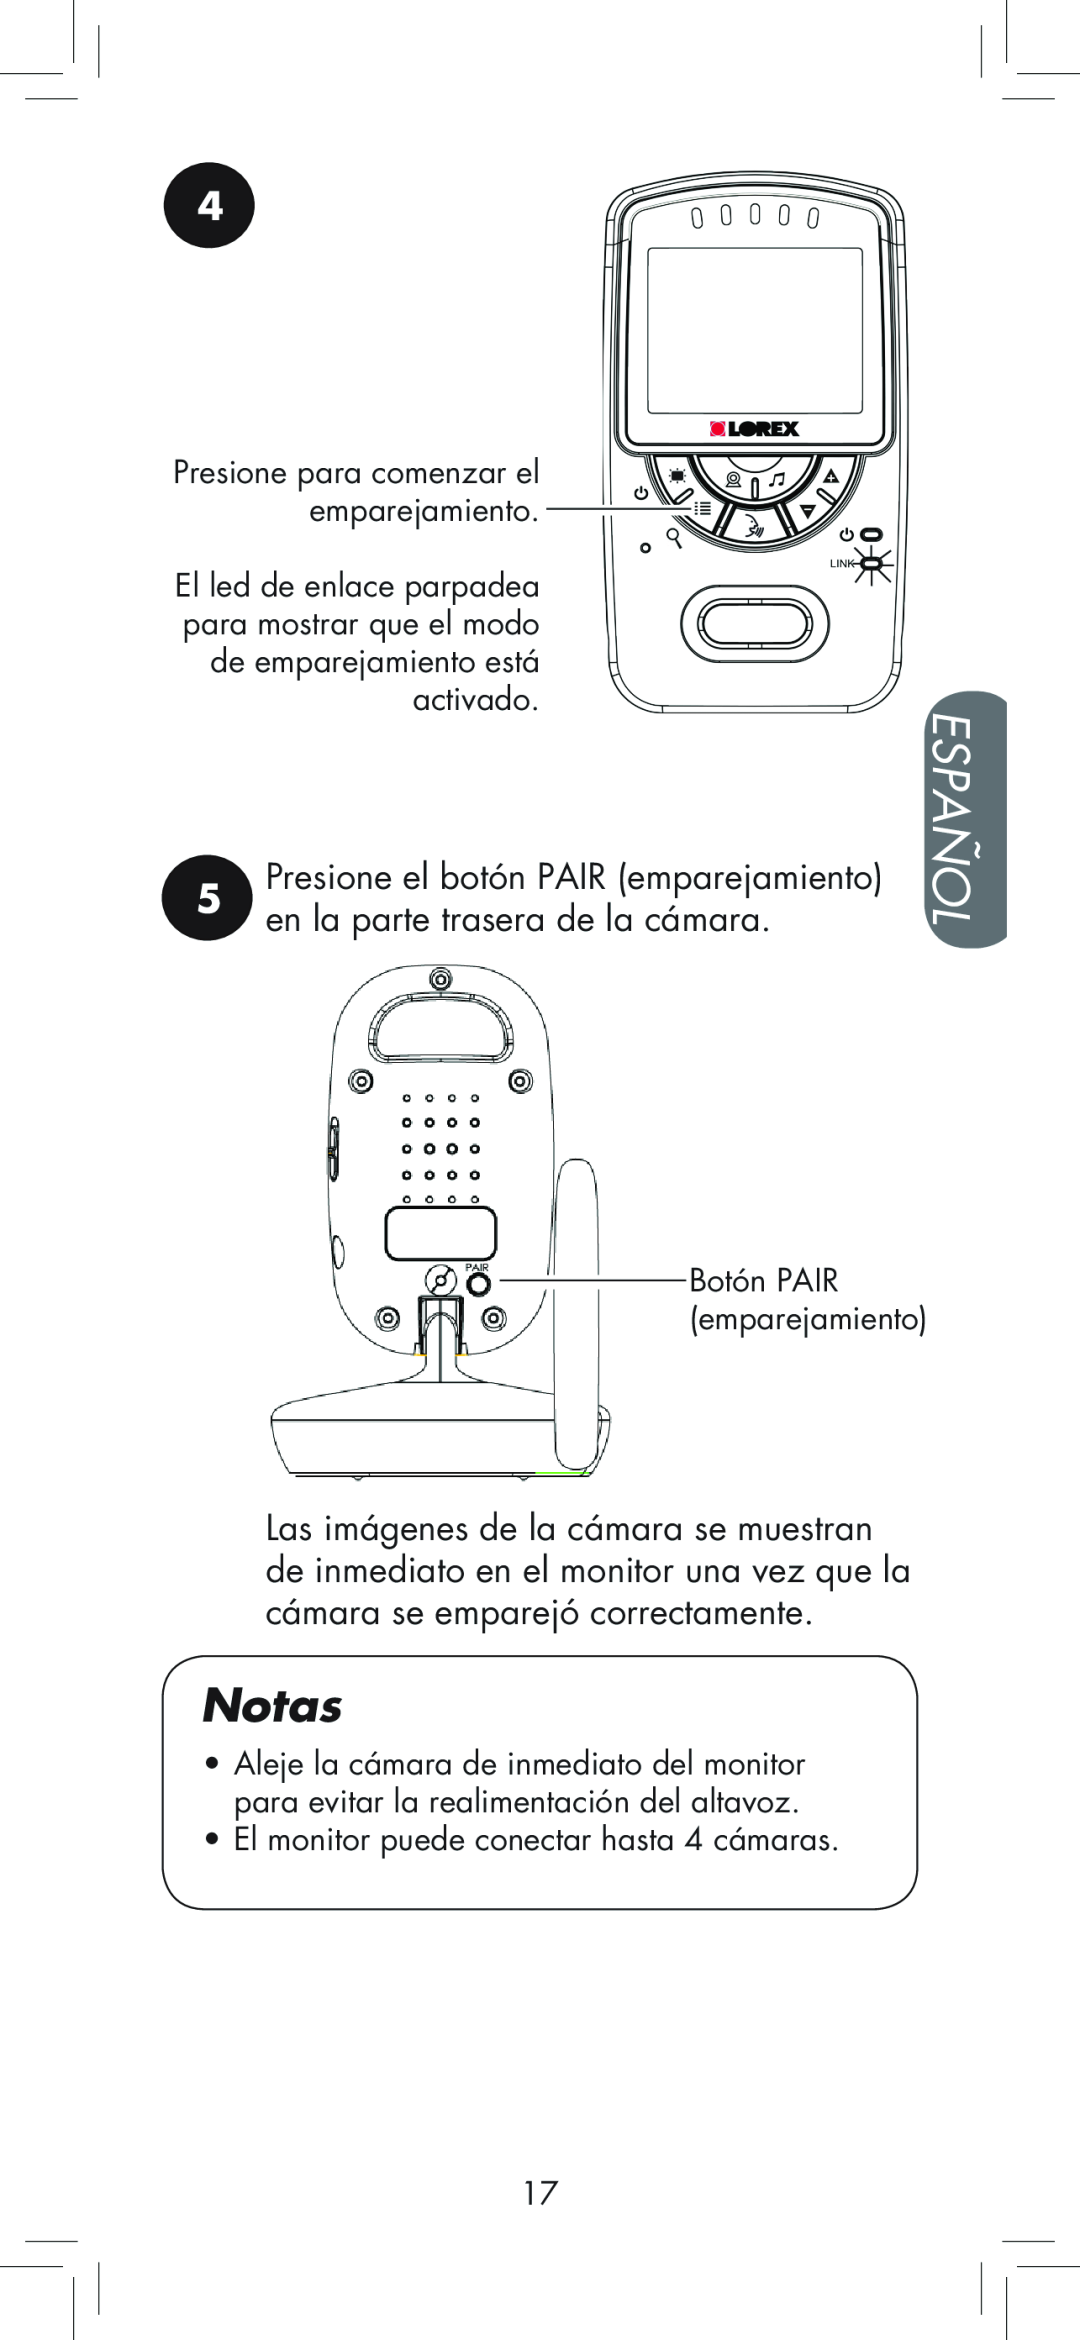 LOREX Technology BB2411 manual Español, Notas, •El monitor puede conectar hasta 4 cámaras, Botón PAIR emparejamiento 